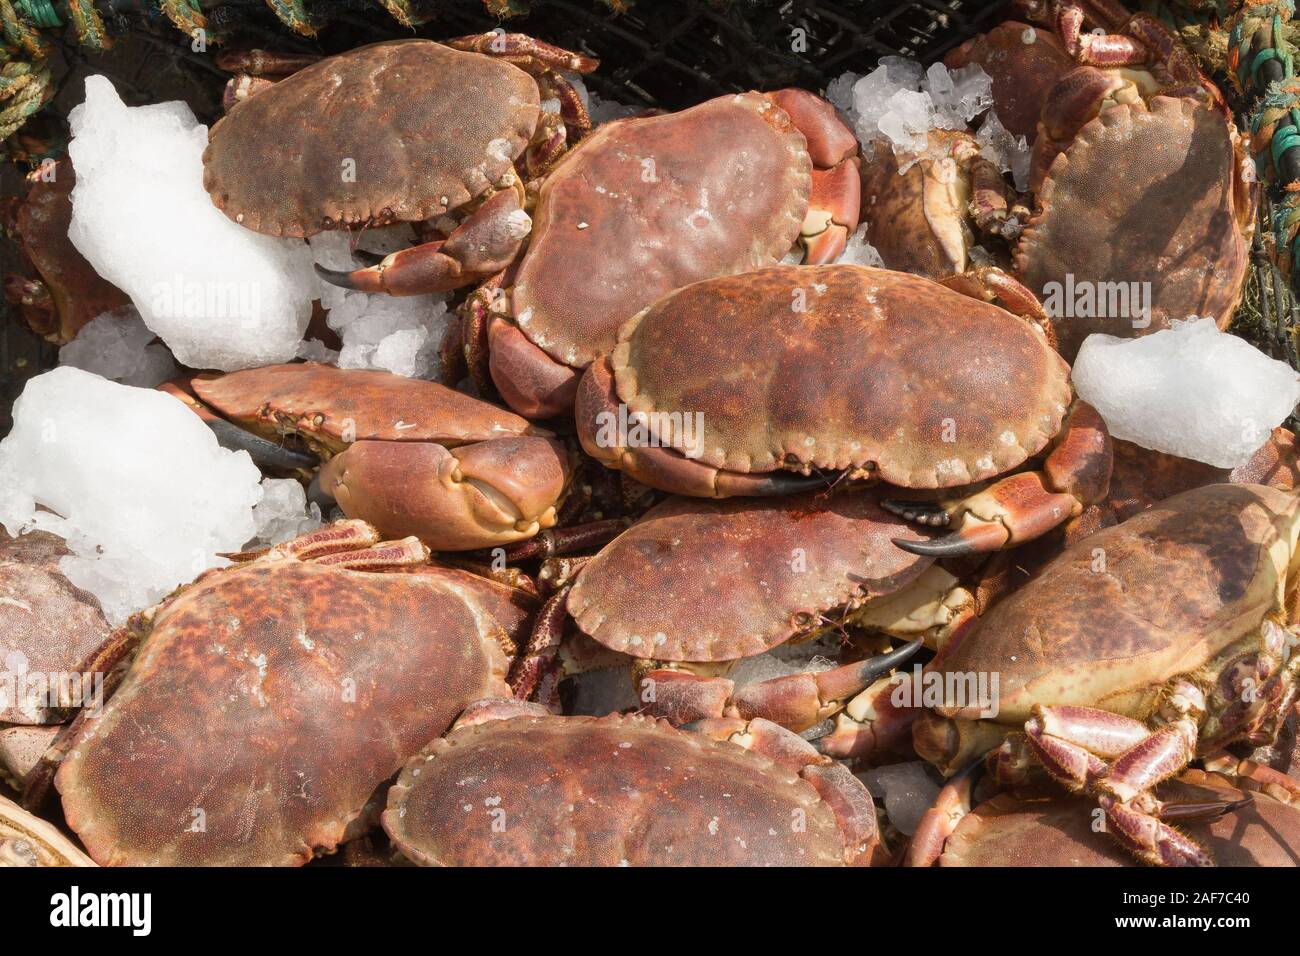 Brown fraîchement pêché des crabes nom latin Cancer pagurus est posé sur un quai de pêche à vendre dans un marché de fruits de mer d'Oban en Ecosse Banque D'Images